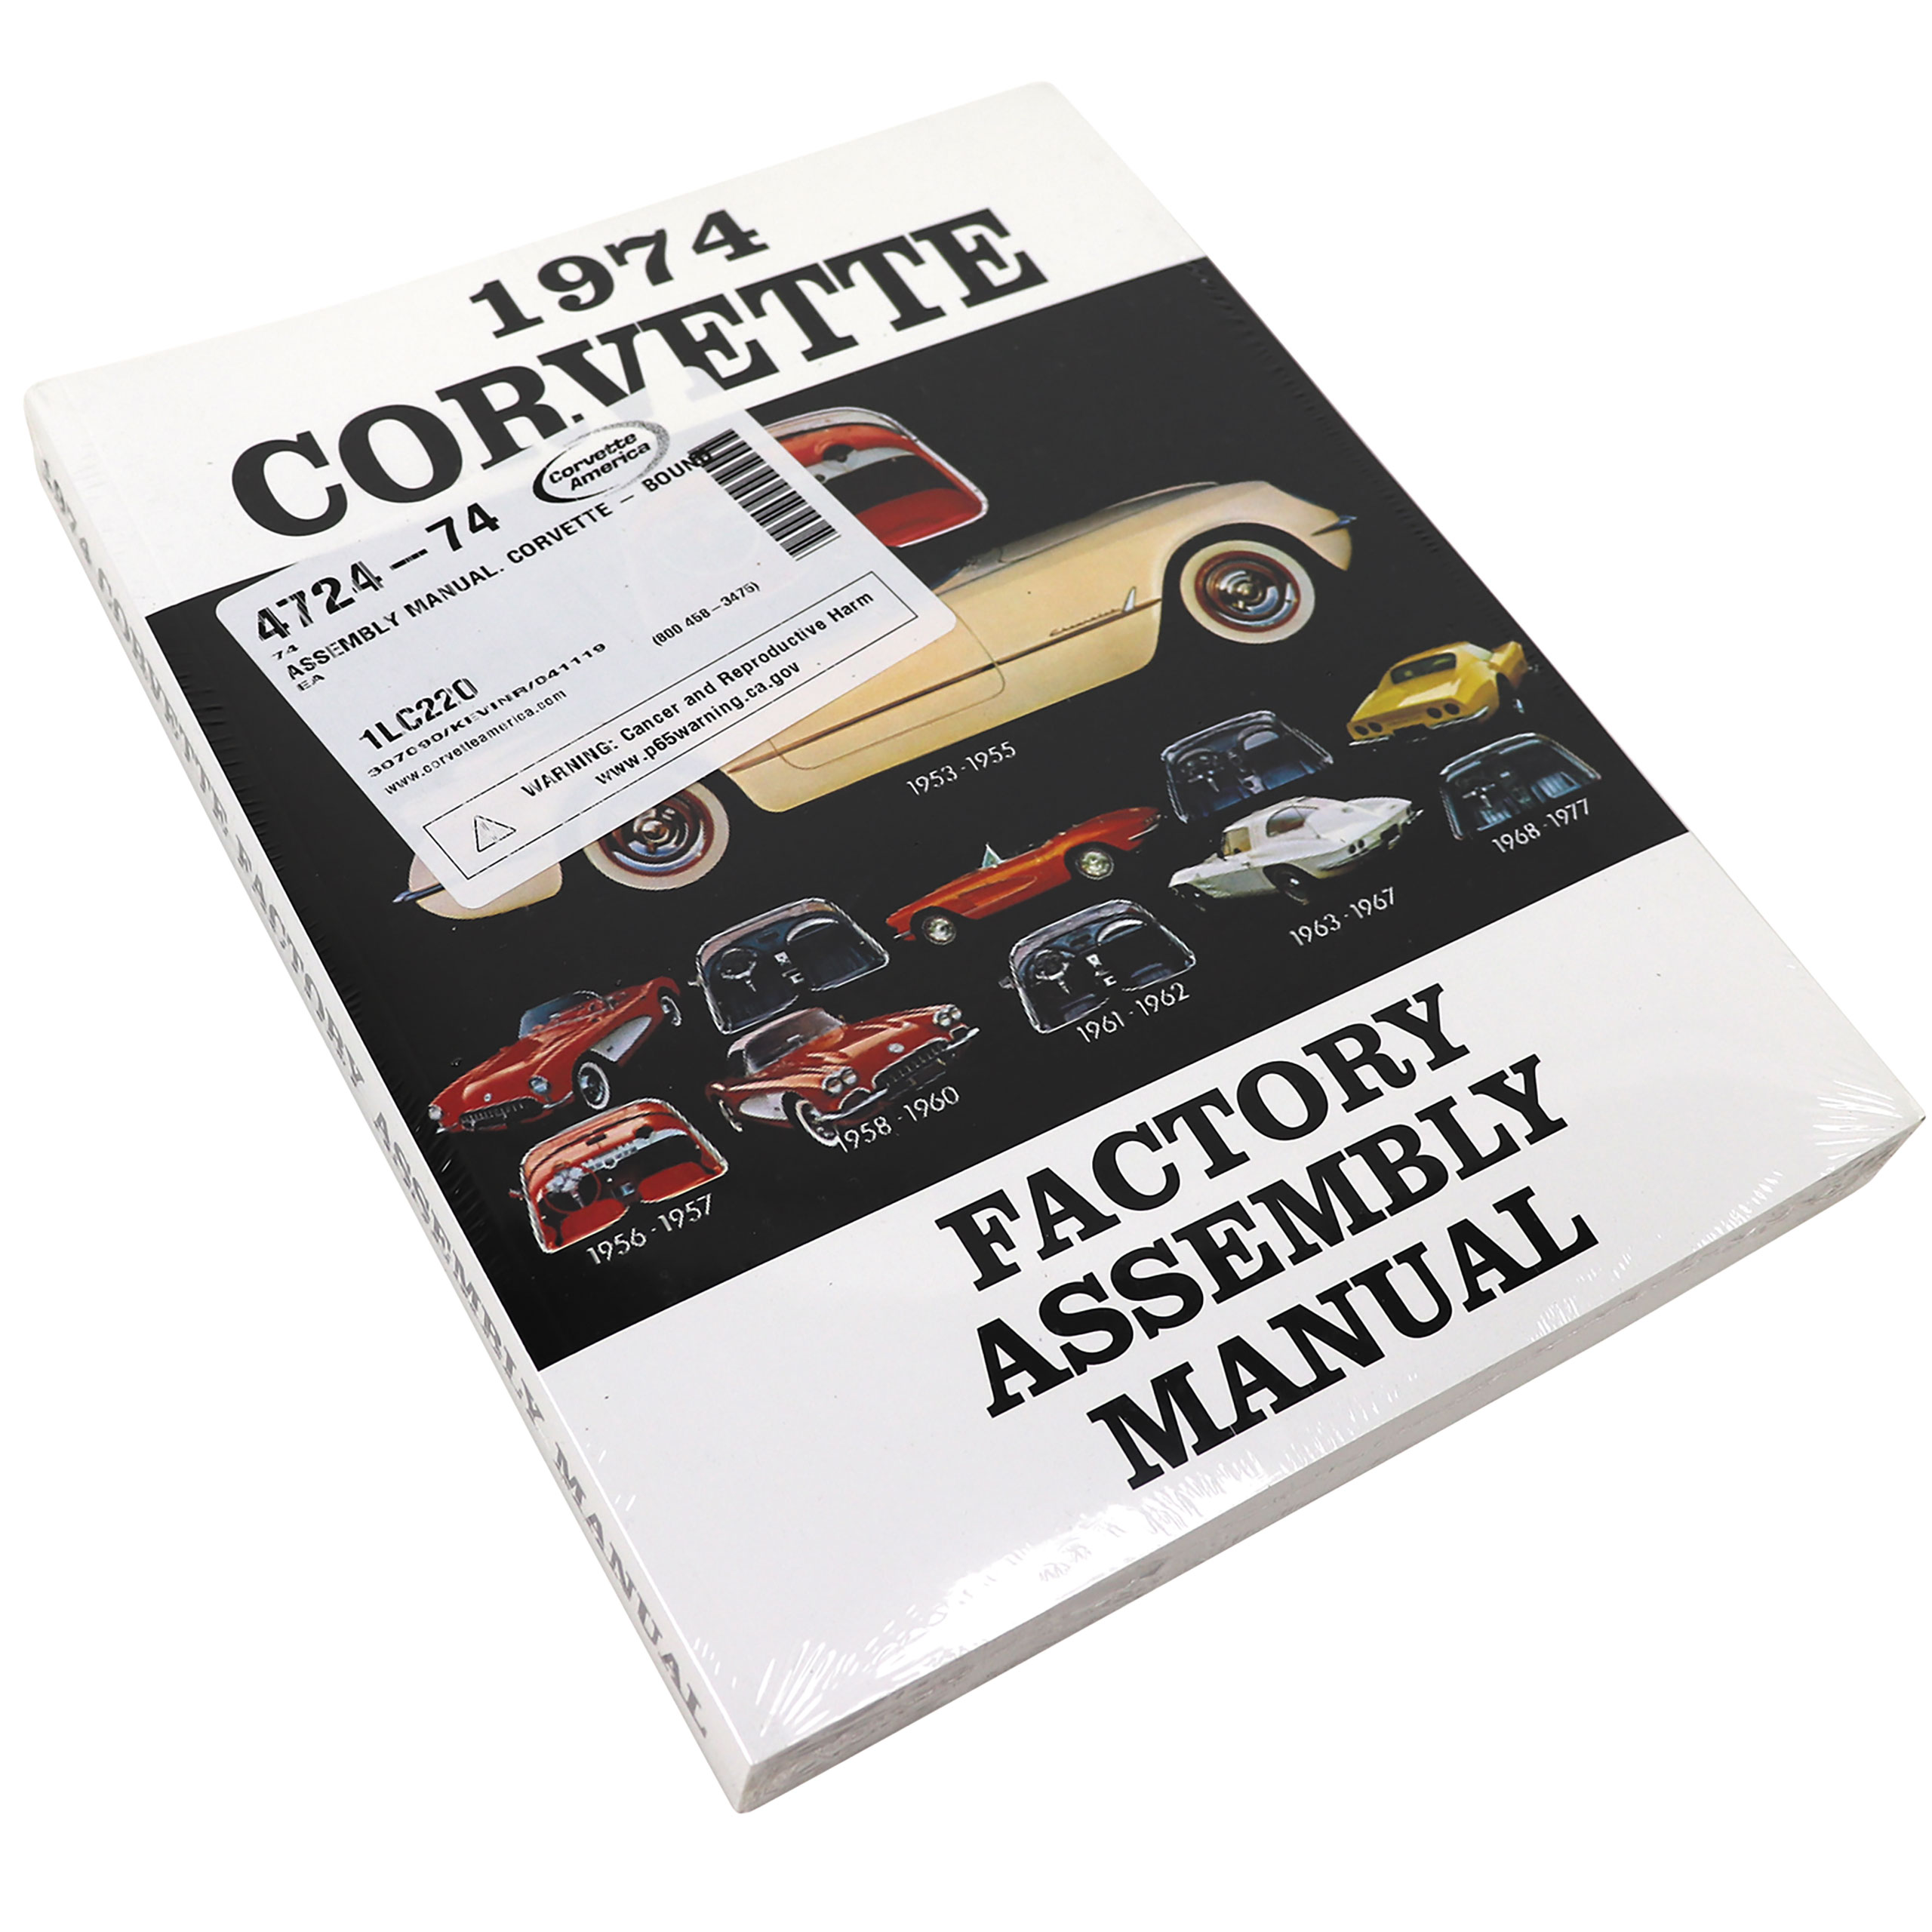 C3 1974 Chevrolet Corvette Assembly Manual. Corvette - Bound - Auto Accessories of America